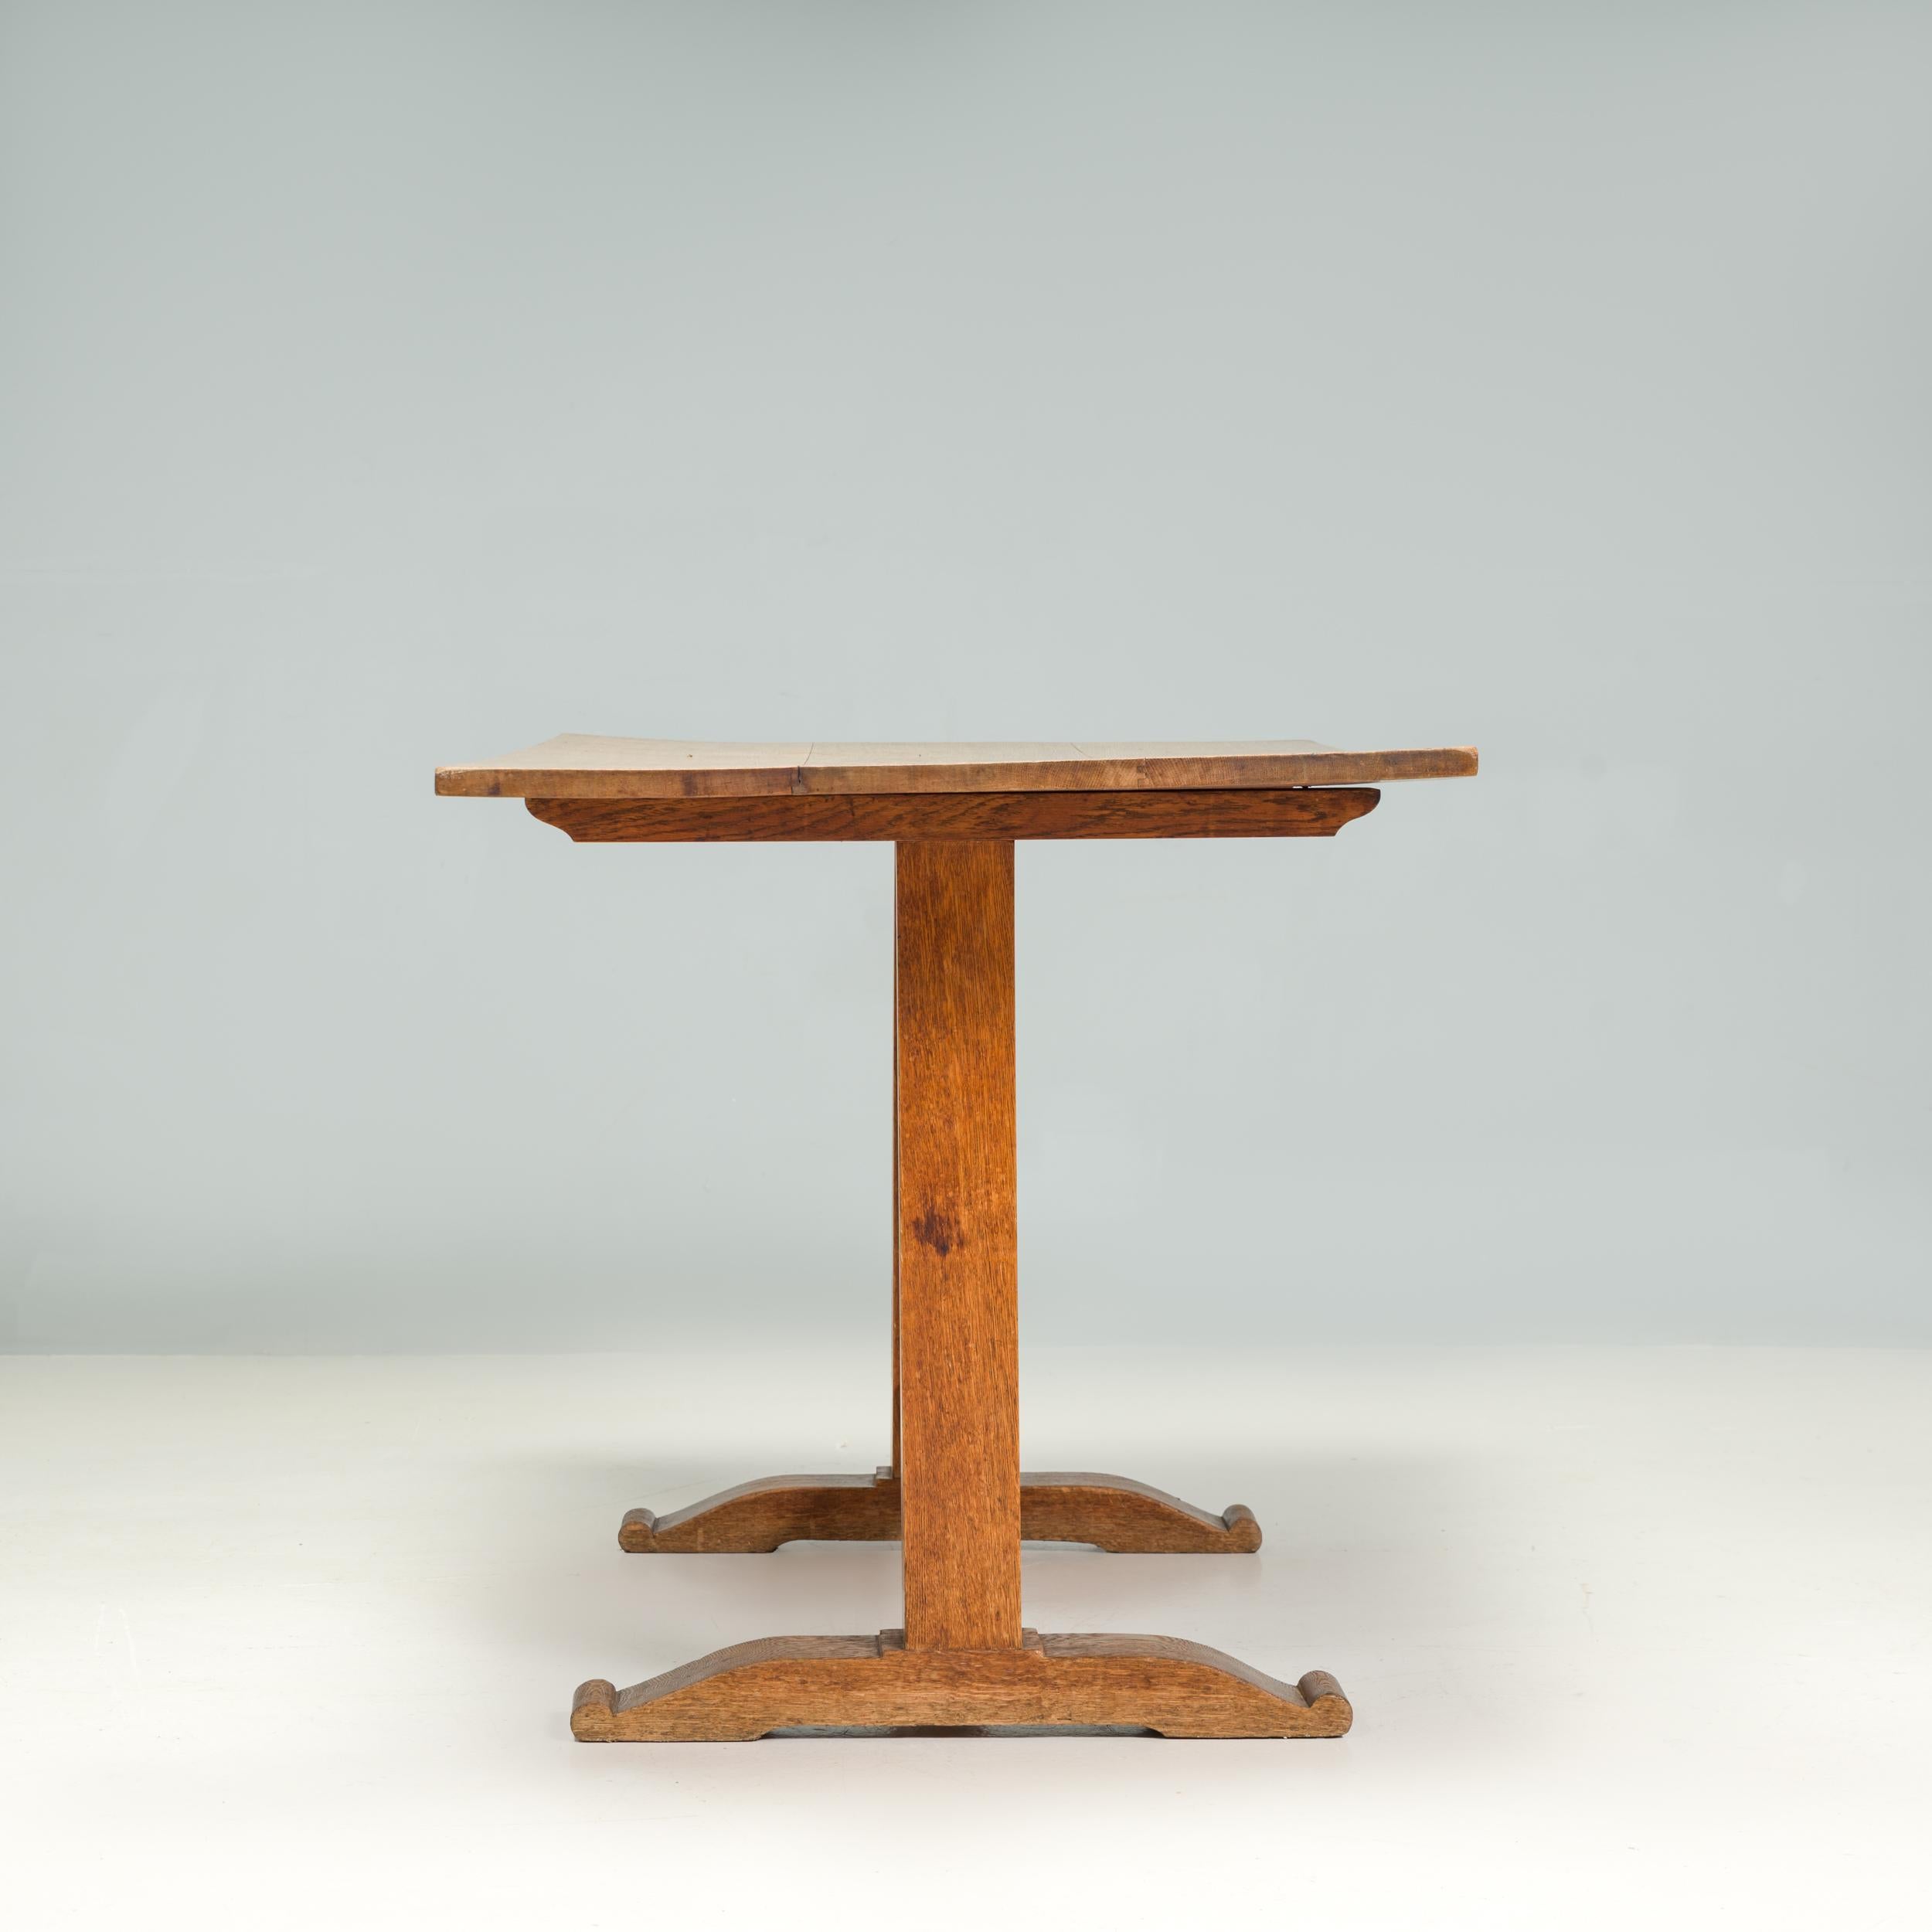 Ein wunderschön konstruierter hölzerner Refektoriumstisch im Stil von Arts & Crafts.

Der Tisch hat eine traditionelle Ästhetik mit einer wunderbar abgenutzten rechteckigen Tischplatte, die aus mehreren Holzbrettern besteht.

Die sockelartigen Beine